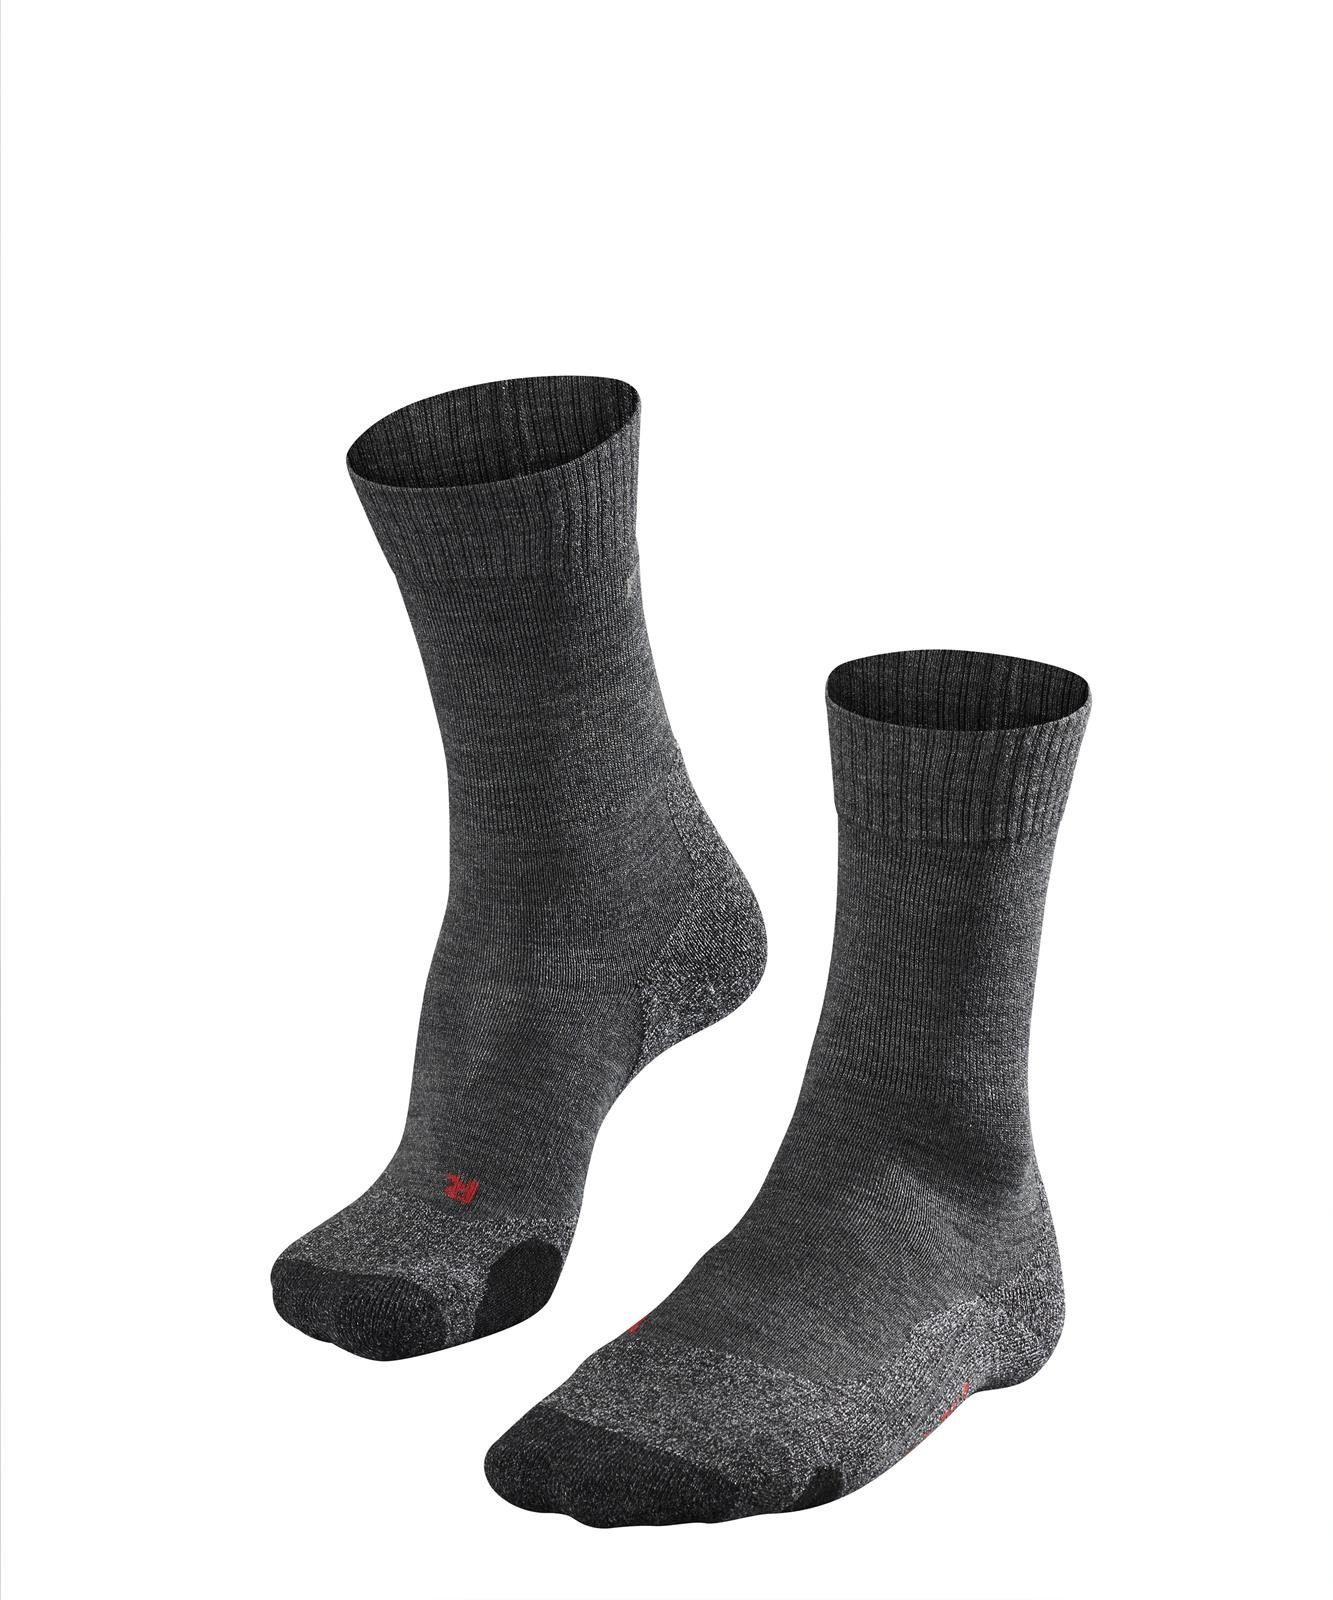 Sportsocken Herren FALKE TK2, - (3180) Anthrazit Socken Socken Polsterung Trekking